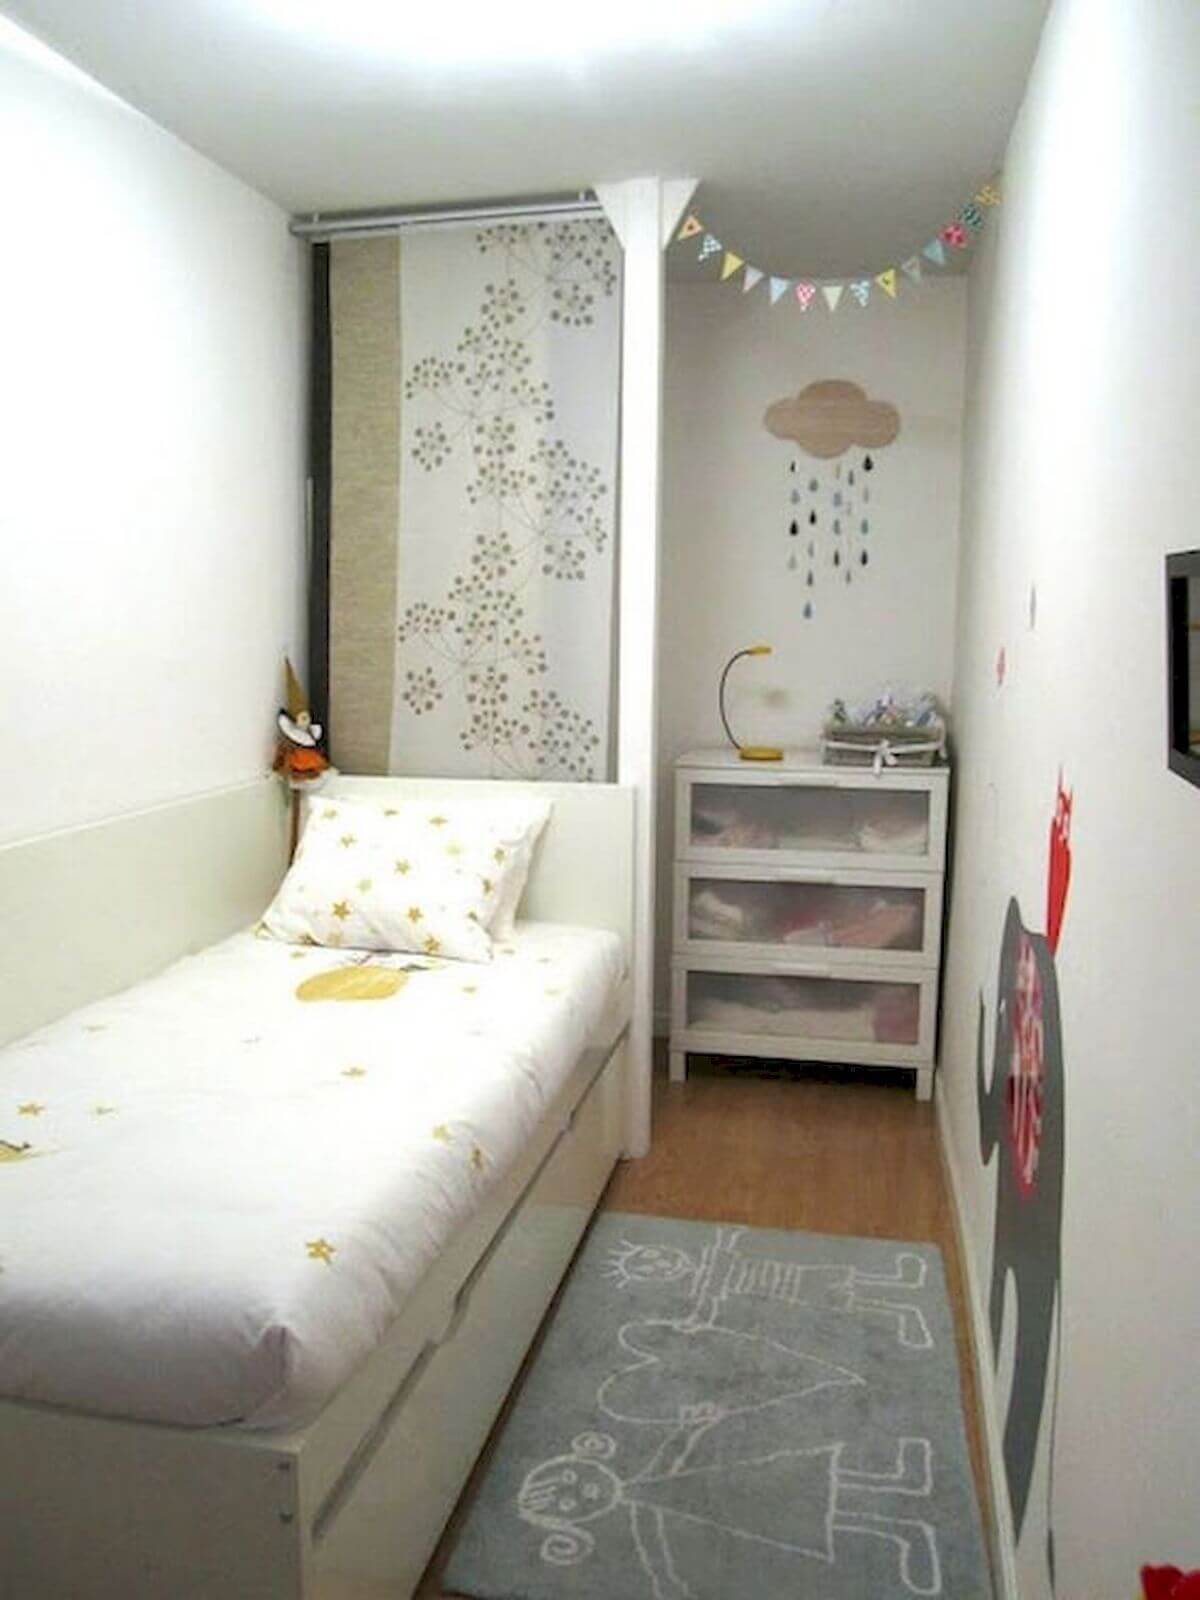 47 Ý tưởng thiết kế tuyệt vời cho phòng ngủ căn hộ nhỏ - VN THING